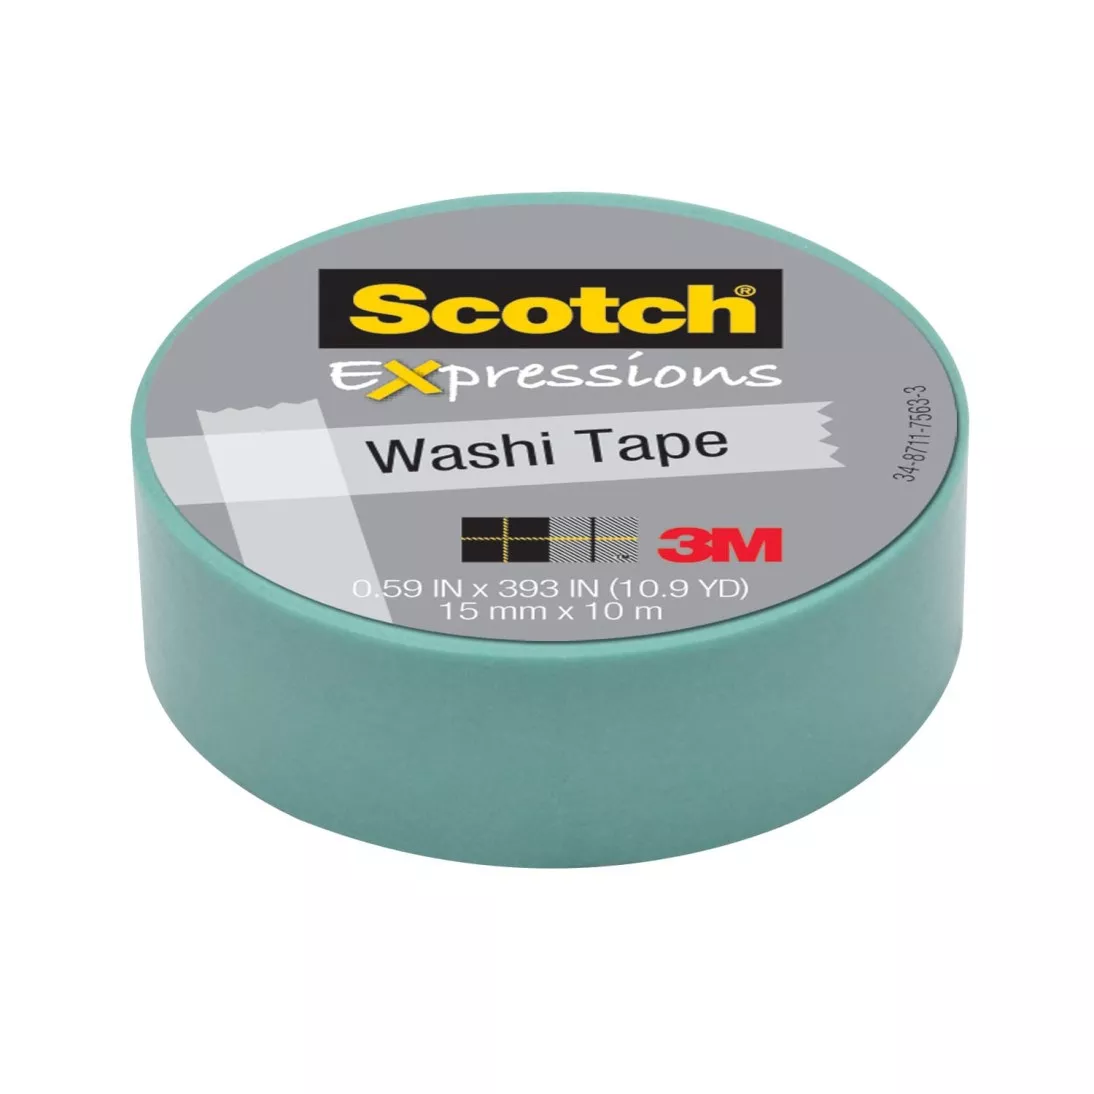 Scotch® Expressions Washi Tape C314-BLU2, .59 in x 393 in (15 mm x 10 m)
Pastel Blue